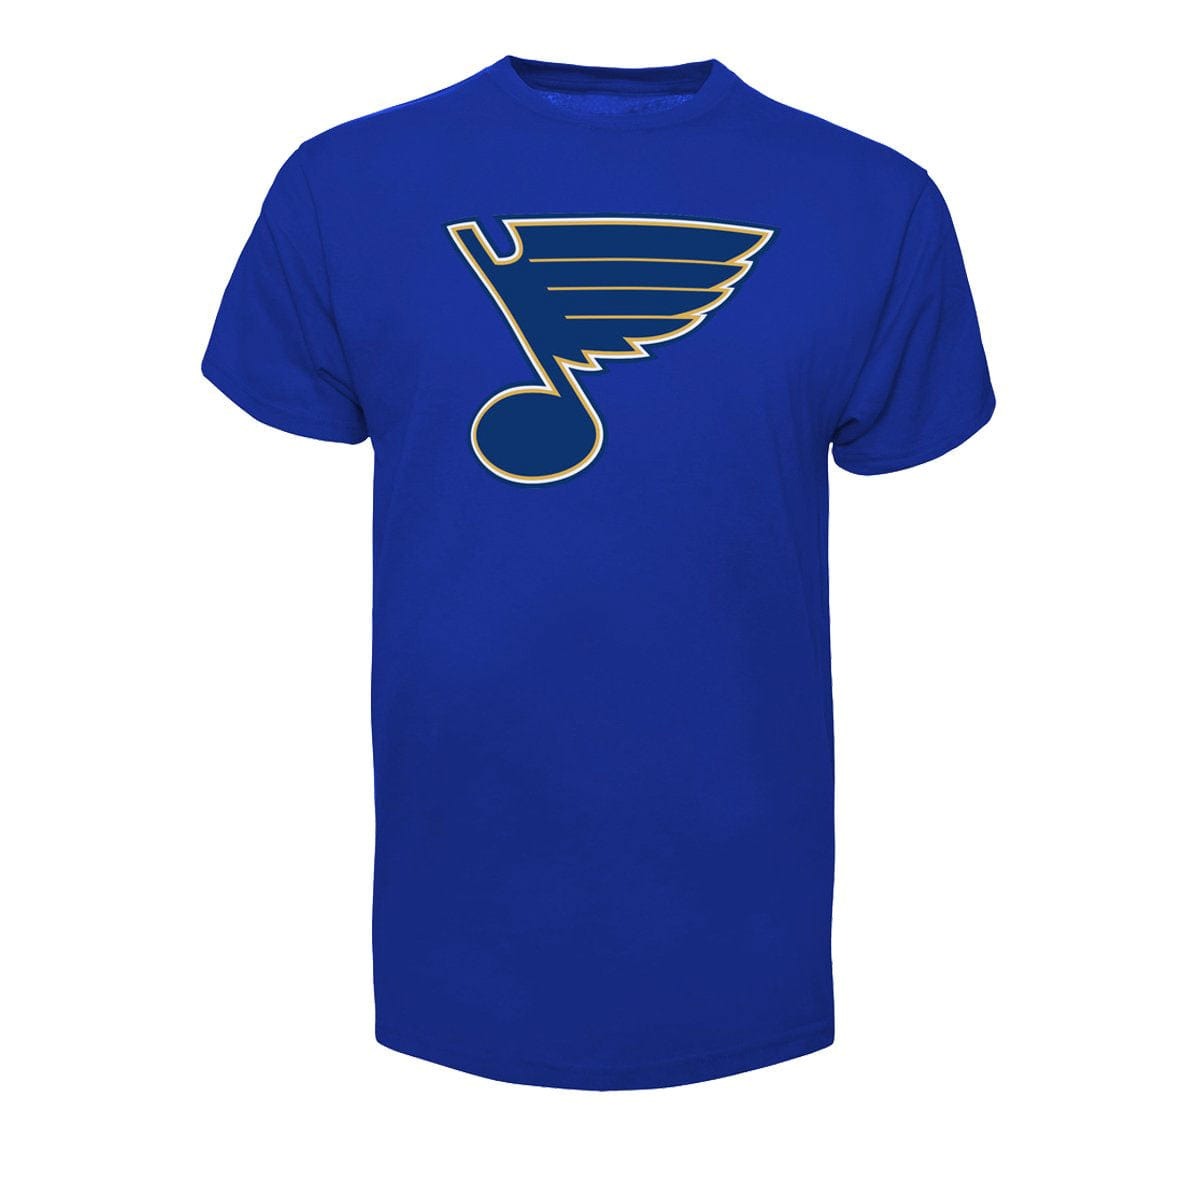 St. Louis Blues 47 Brand Fan Tee Shirt